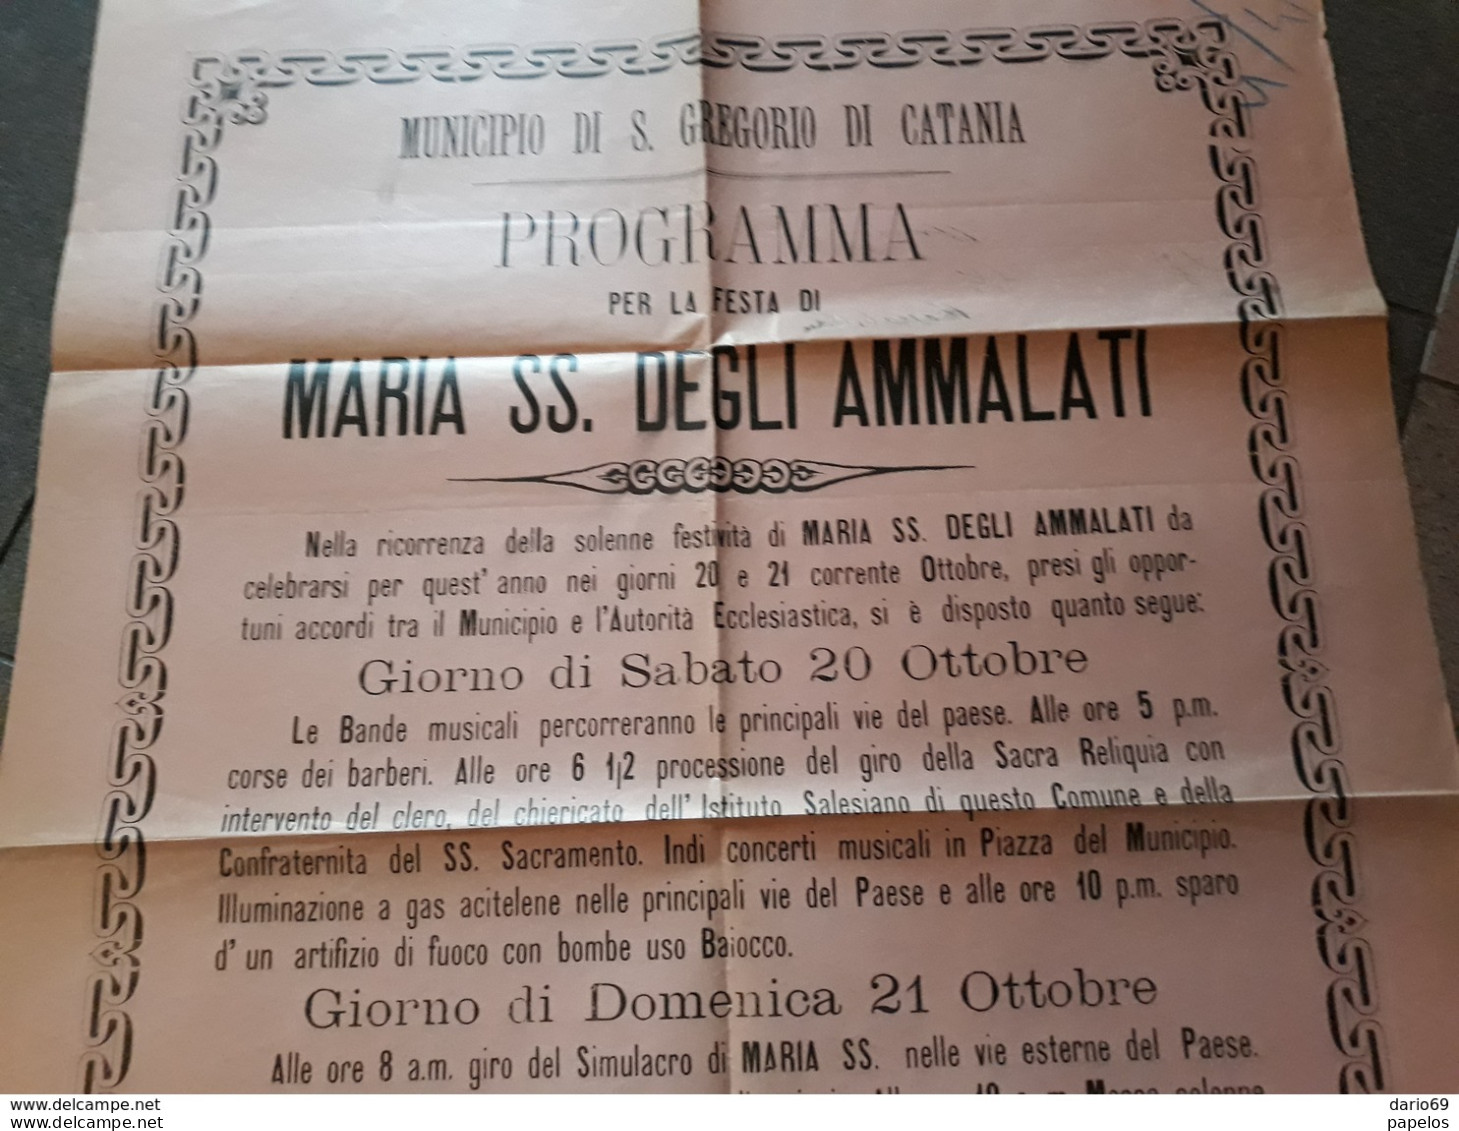 1900  MANIFESTO  S. GREGORIO    CATANIA  PROGRAMMA  PER LA  FESTA  DI MARIA SS. DEGLI AMMALATI - Historical Documents